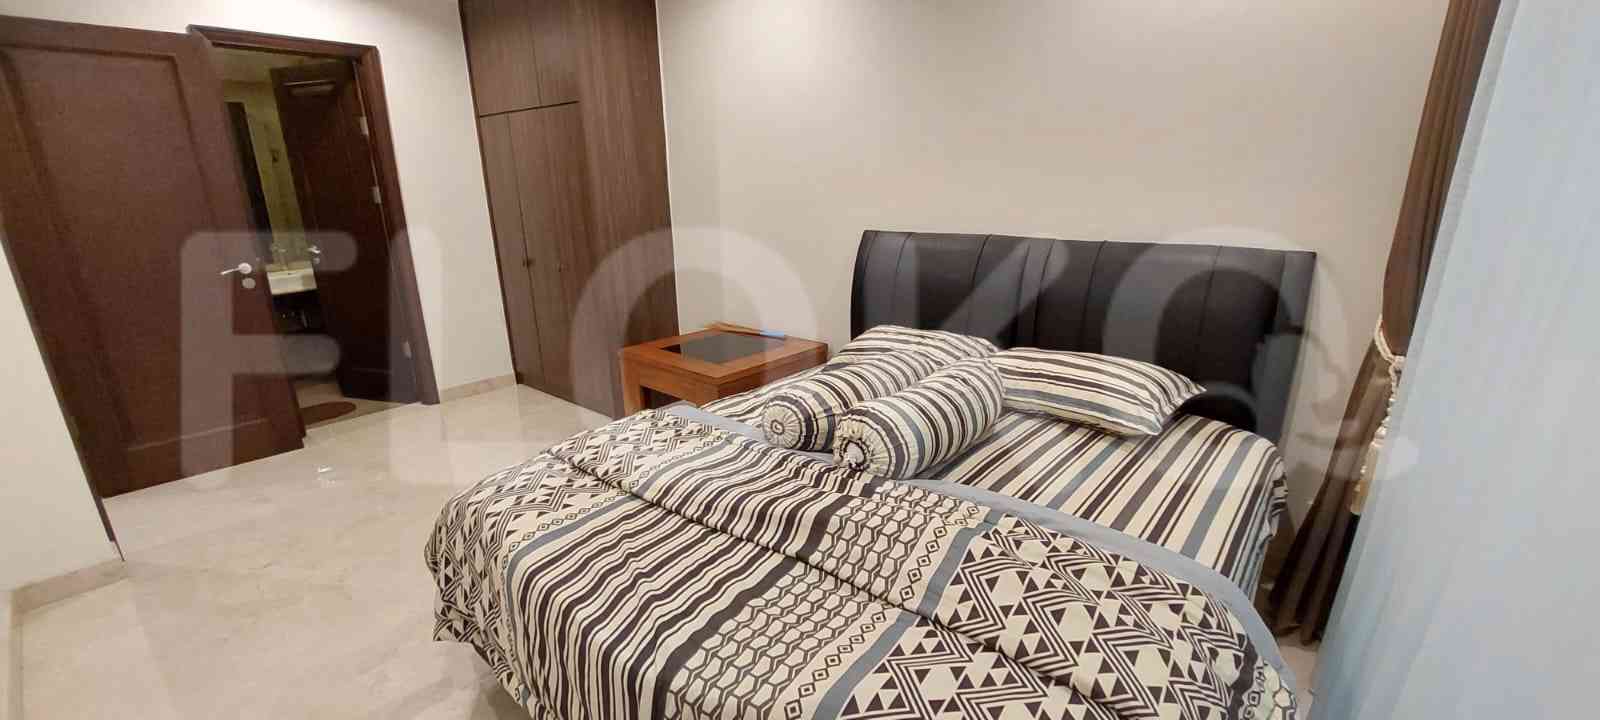 Tipe 3 Kamar Tidur di Lantai 2 untuk disewakan di Pondok Indah Residence - fpo5e5 10